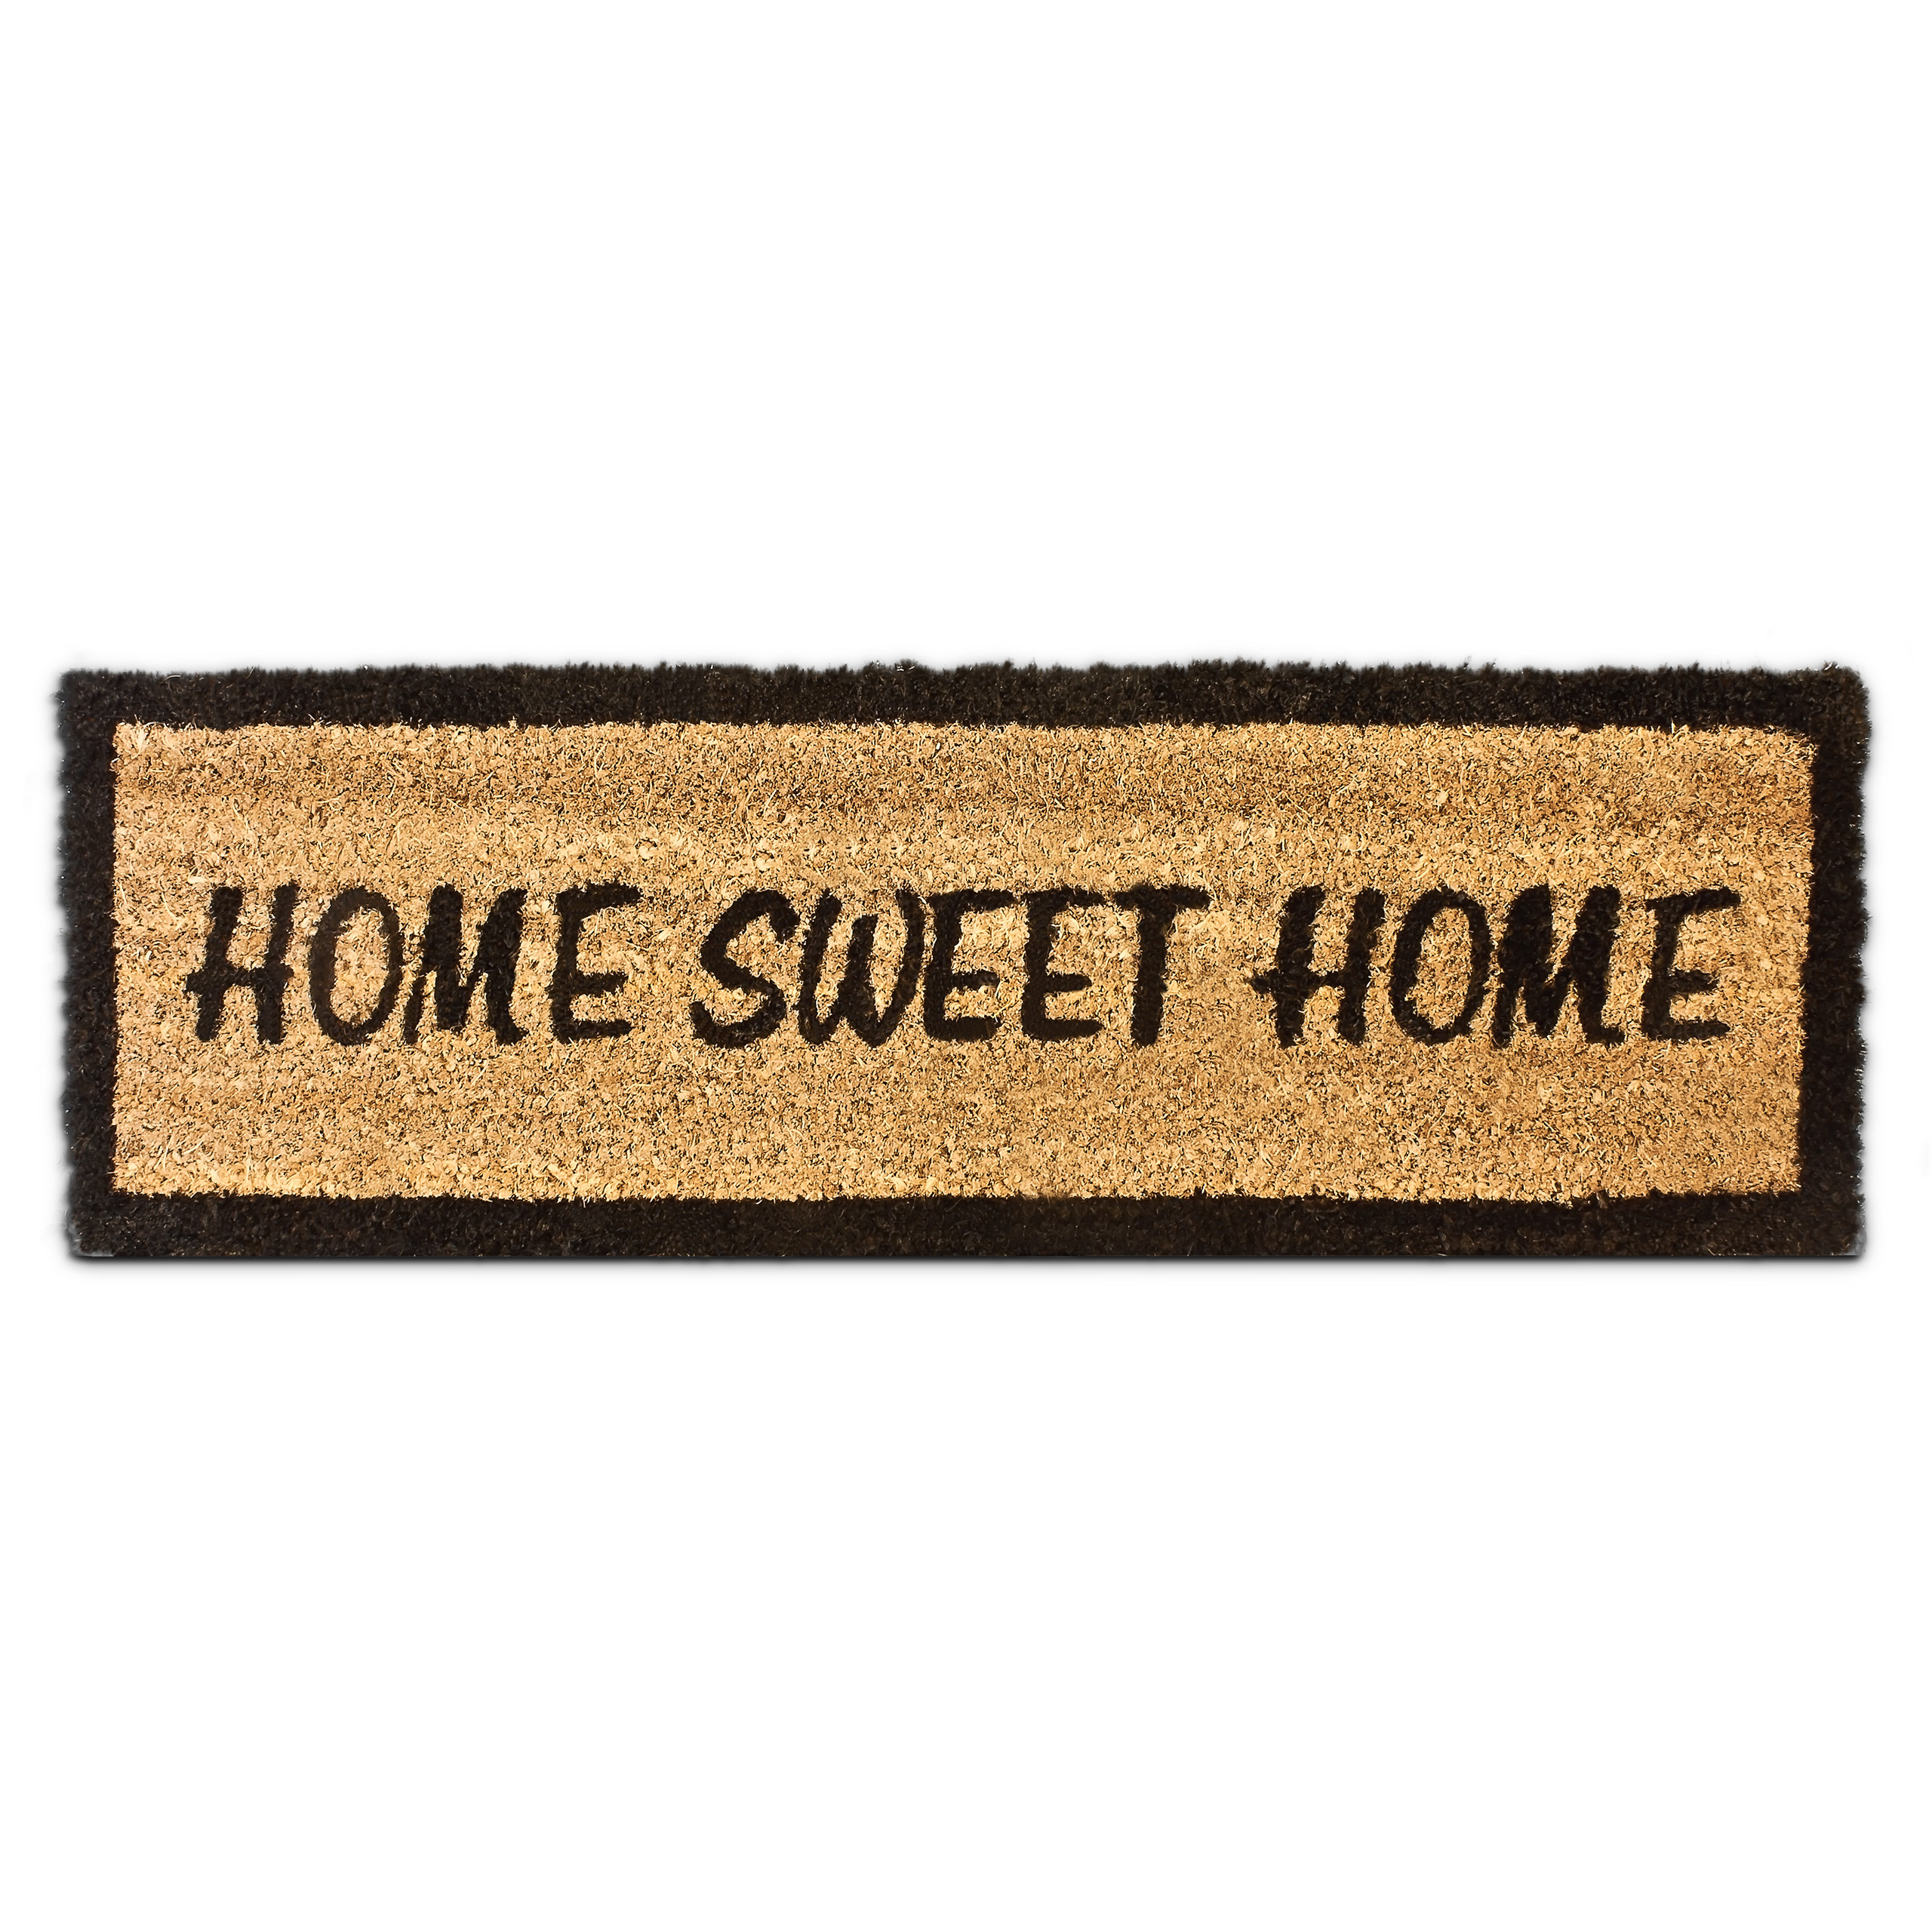 Fußmatte HOME SWEET HOME kaufen | home24